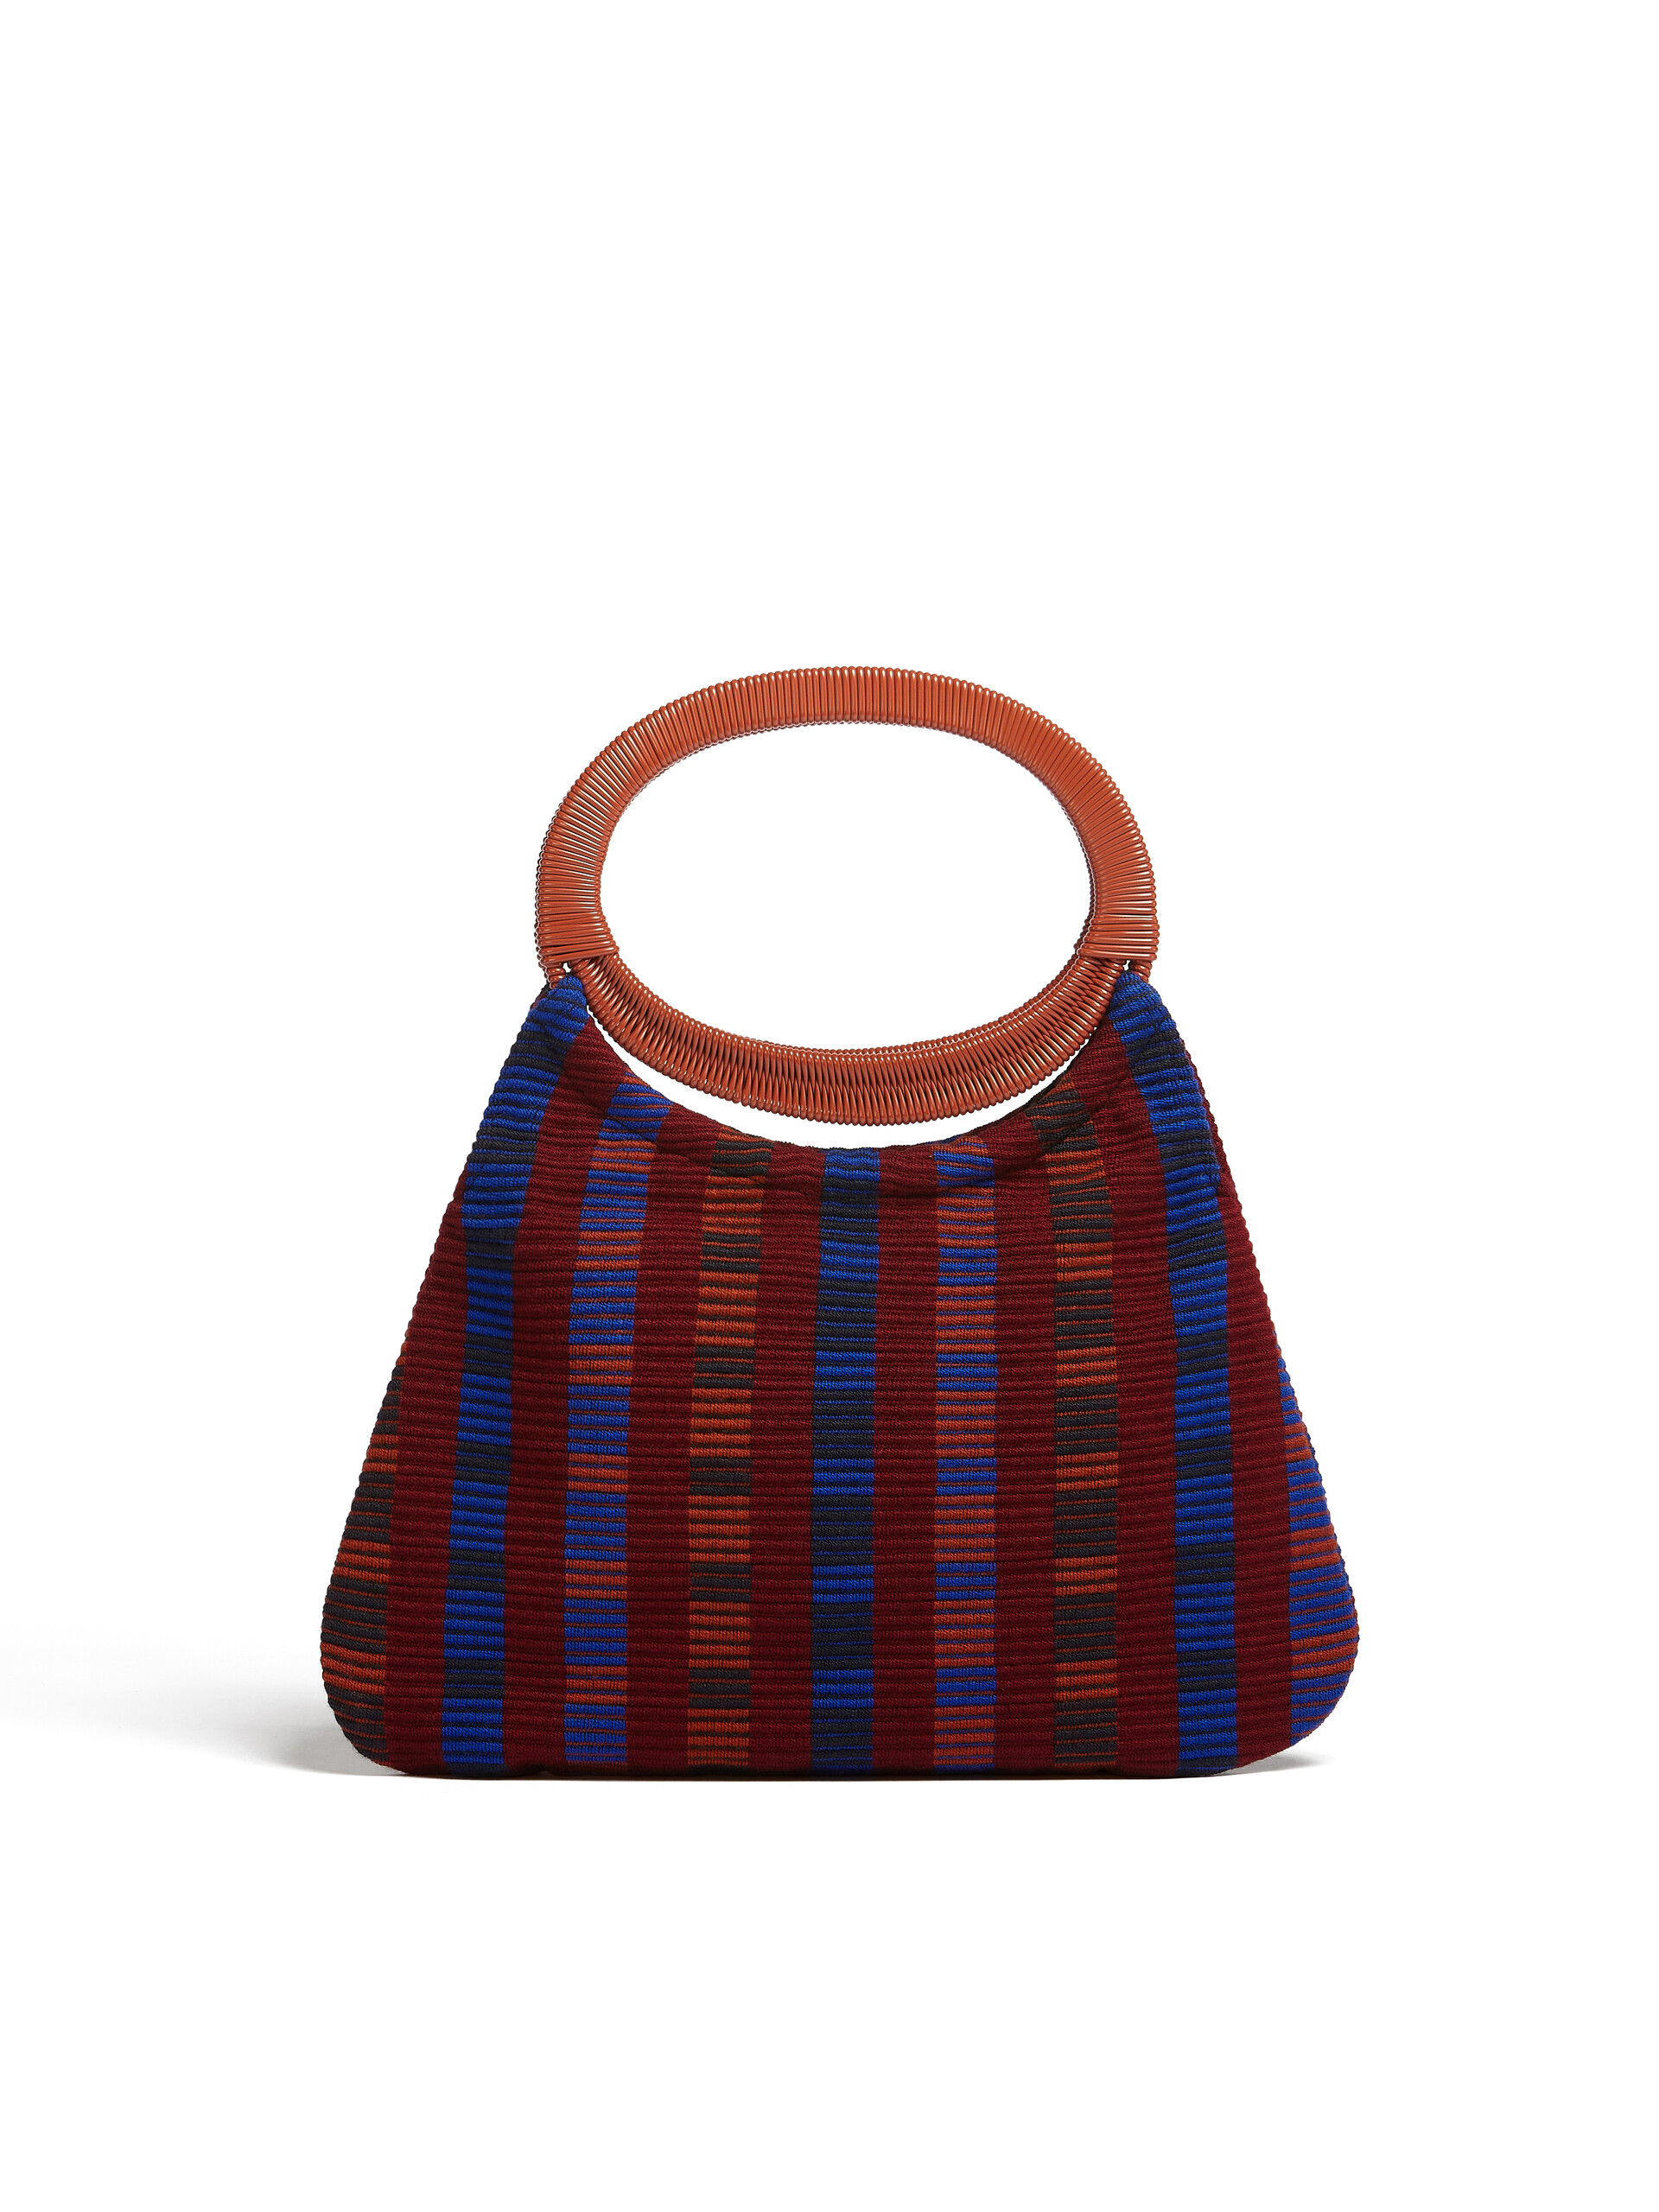 MARNI MARKET BOAT bag in multicolor red striped cotton - Furniture - Image 3